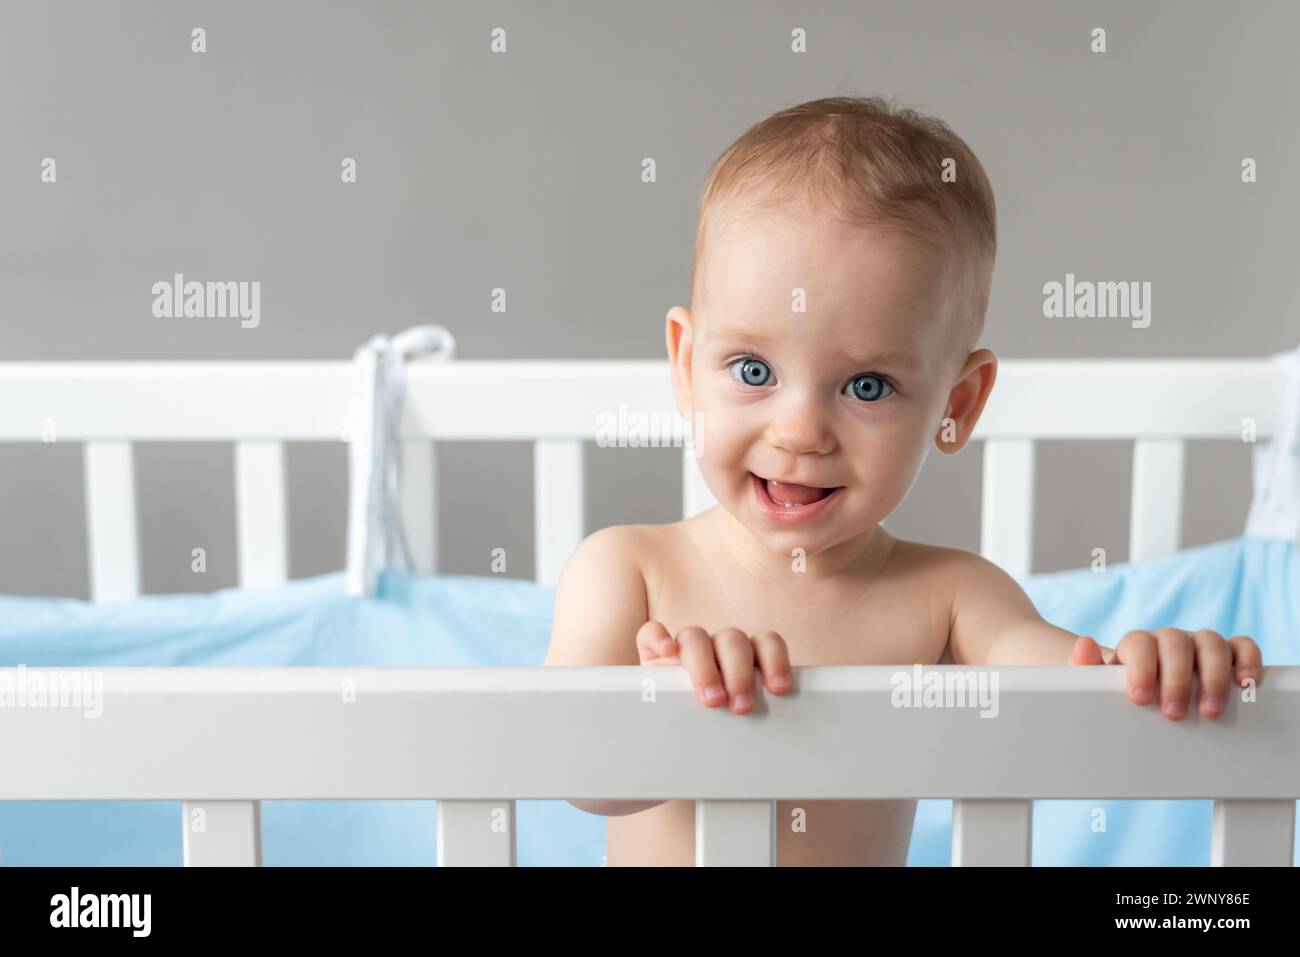 Das Baby sieht vertrauensvoll und freundlich aus, während es in einem Kinderbett steht Stockfoto